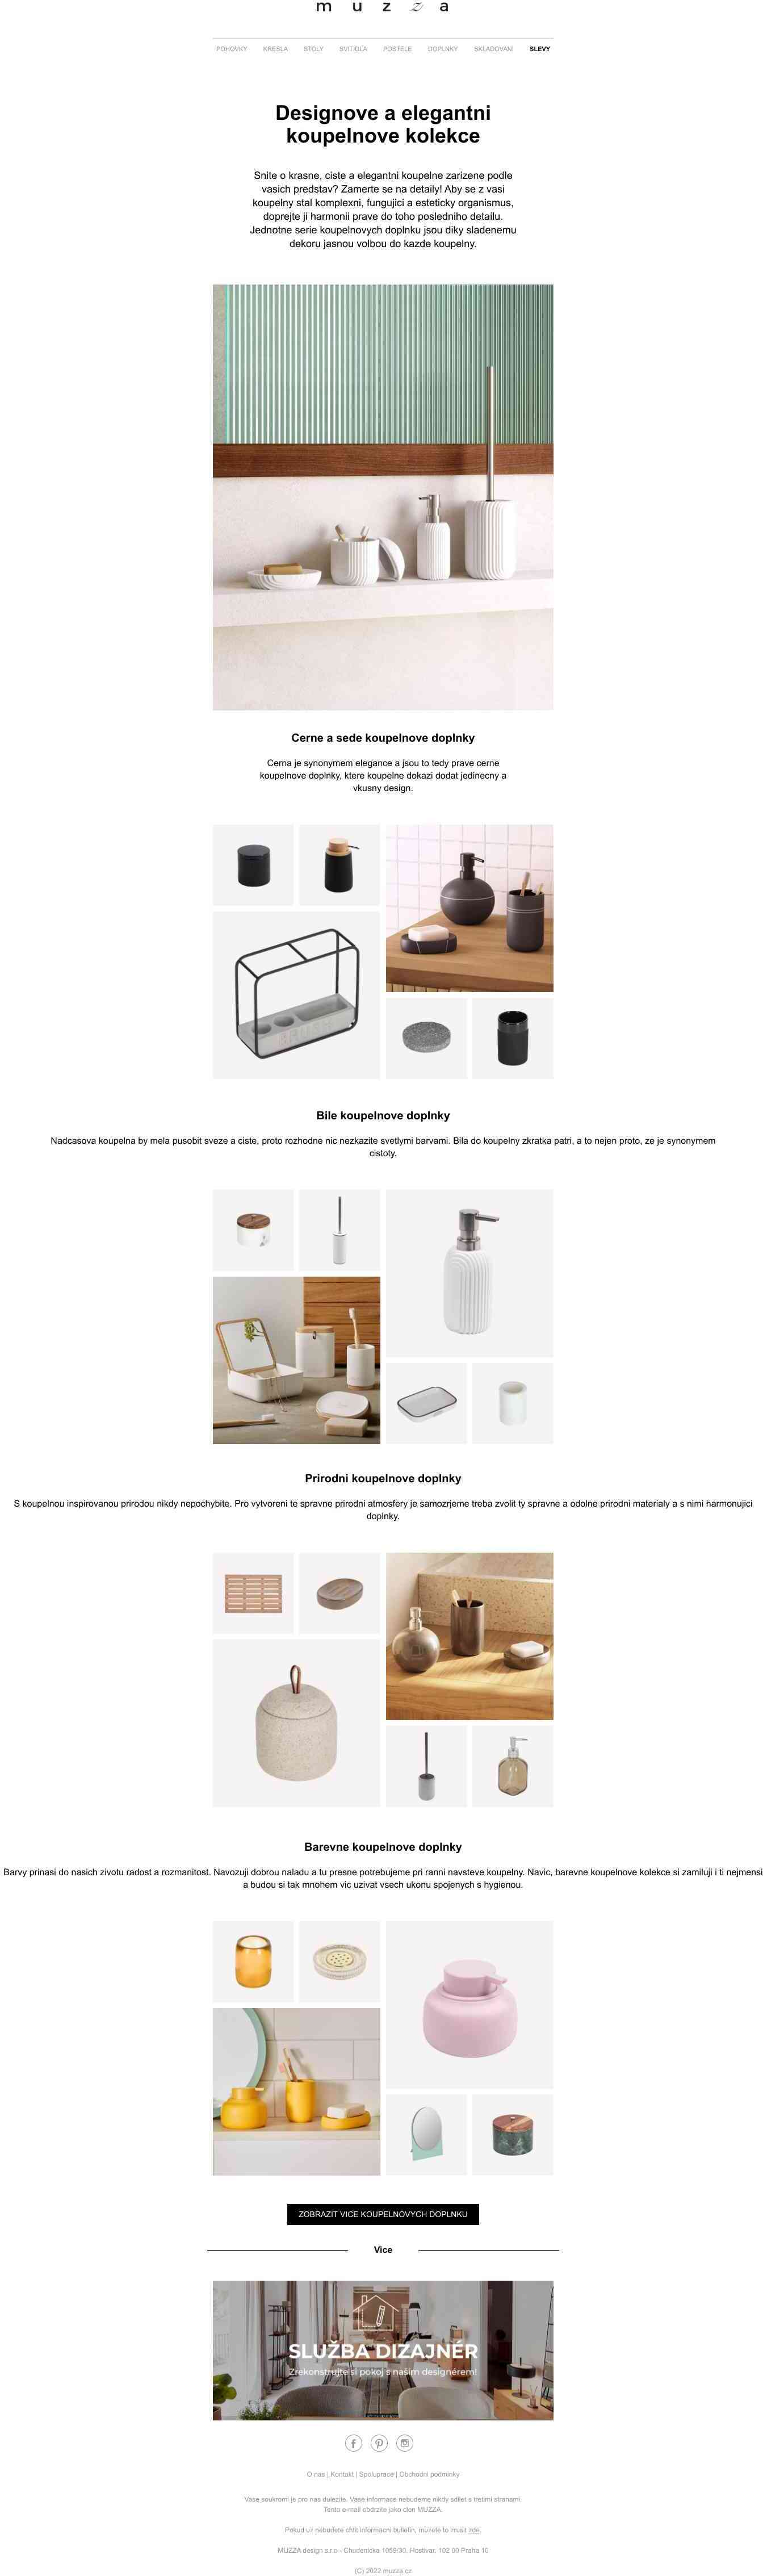 ✨ Designové a elegantní koupelnové kolekce